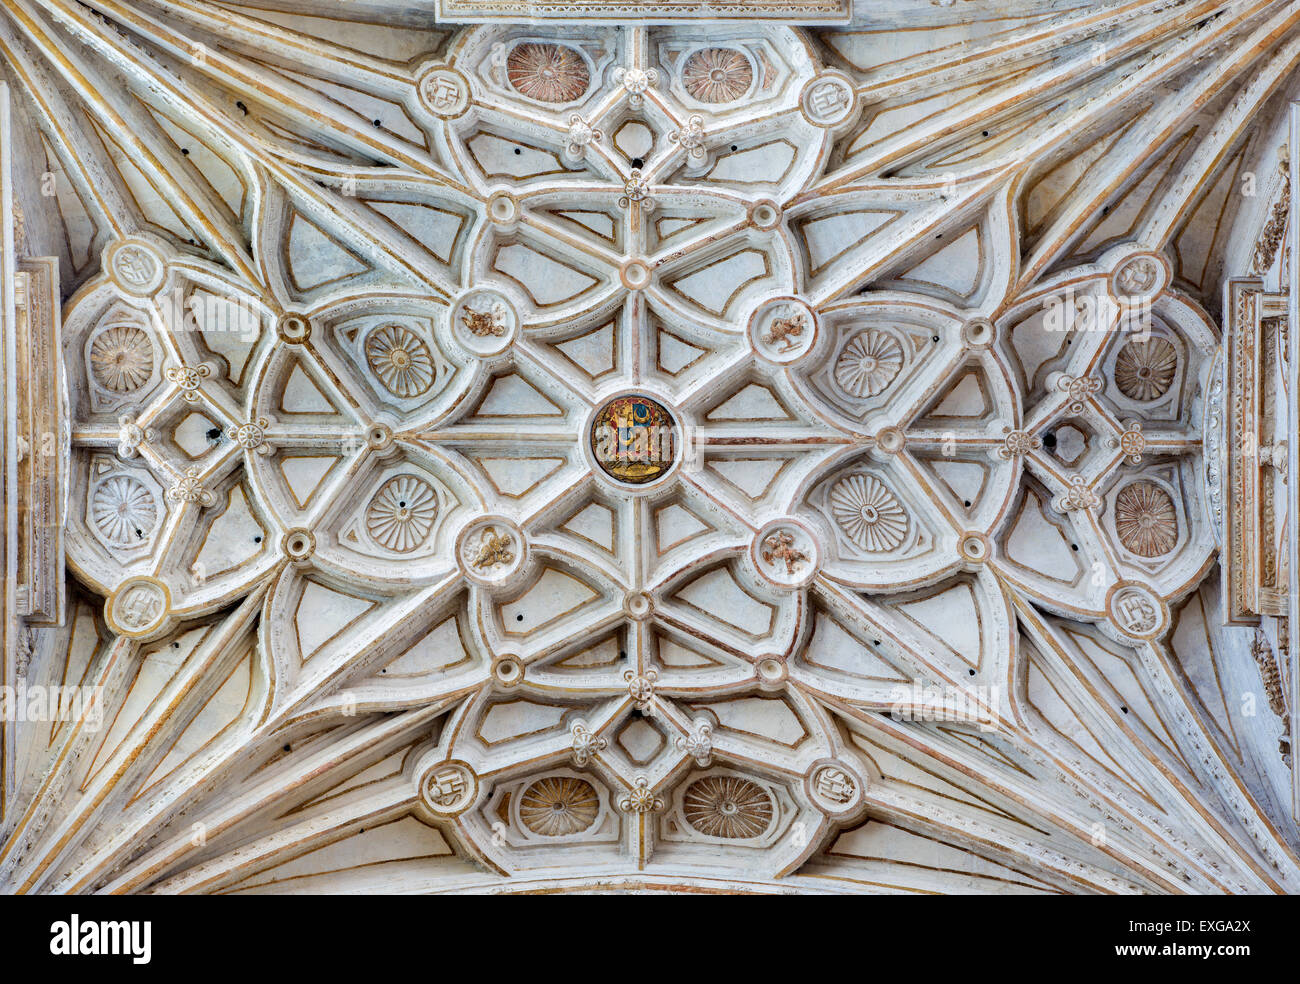 CORDOBA, Spanien - 28. Mai 2015: Das gotische Gewölbe des Seitenschiff in der Kathedrale. Stockfoto